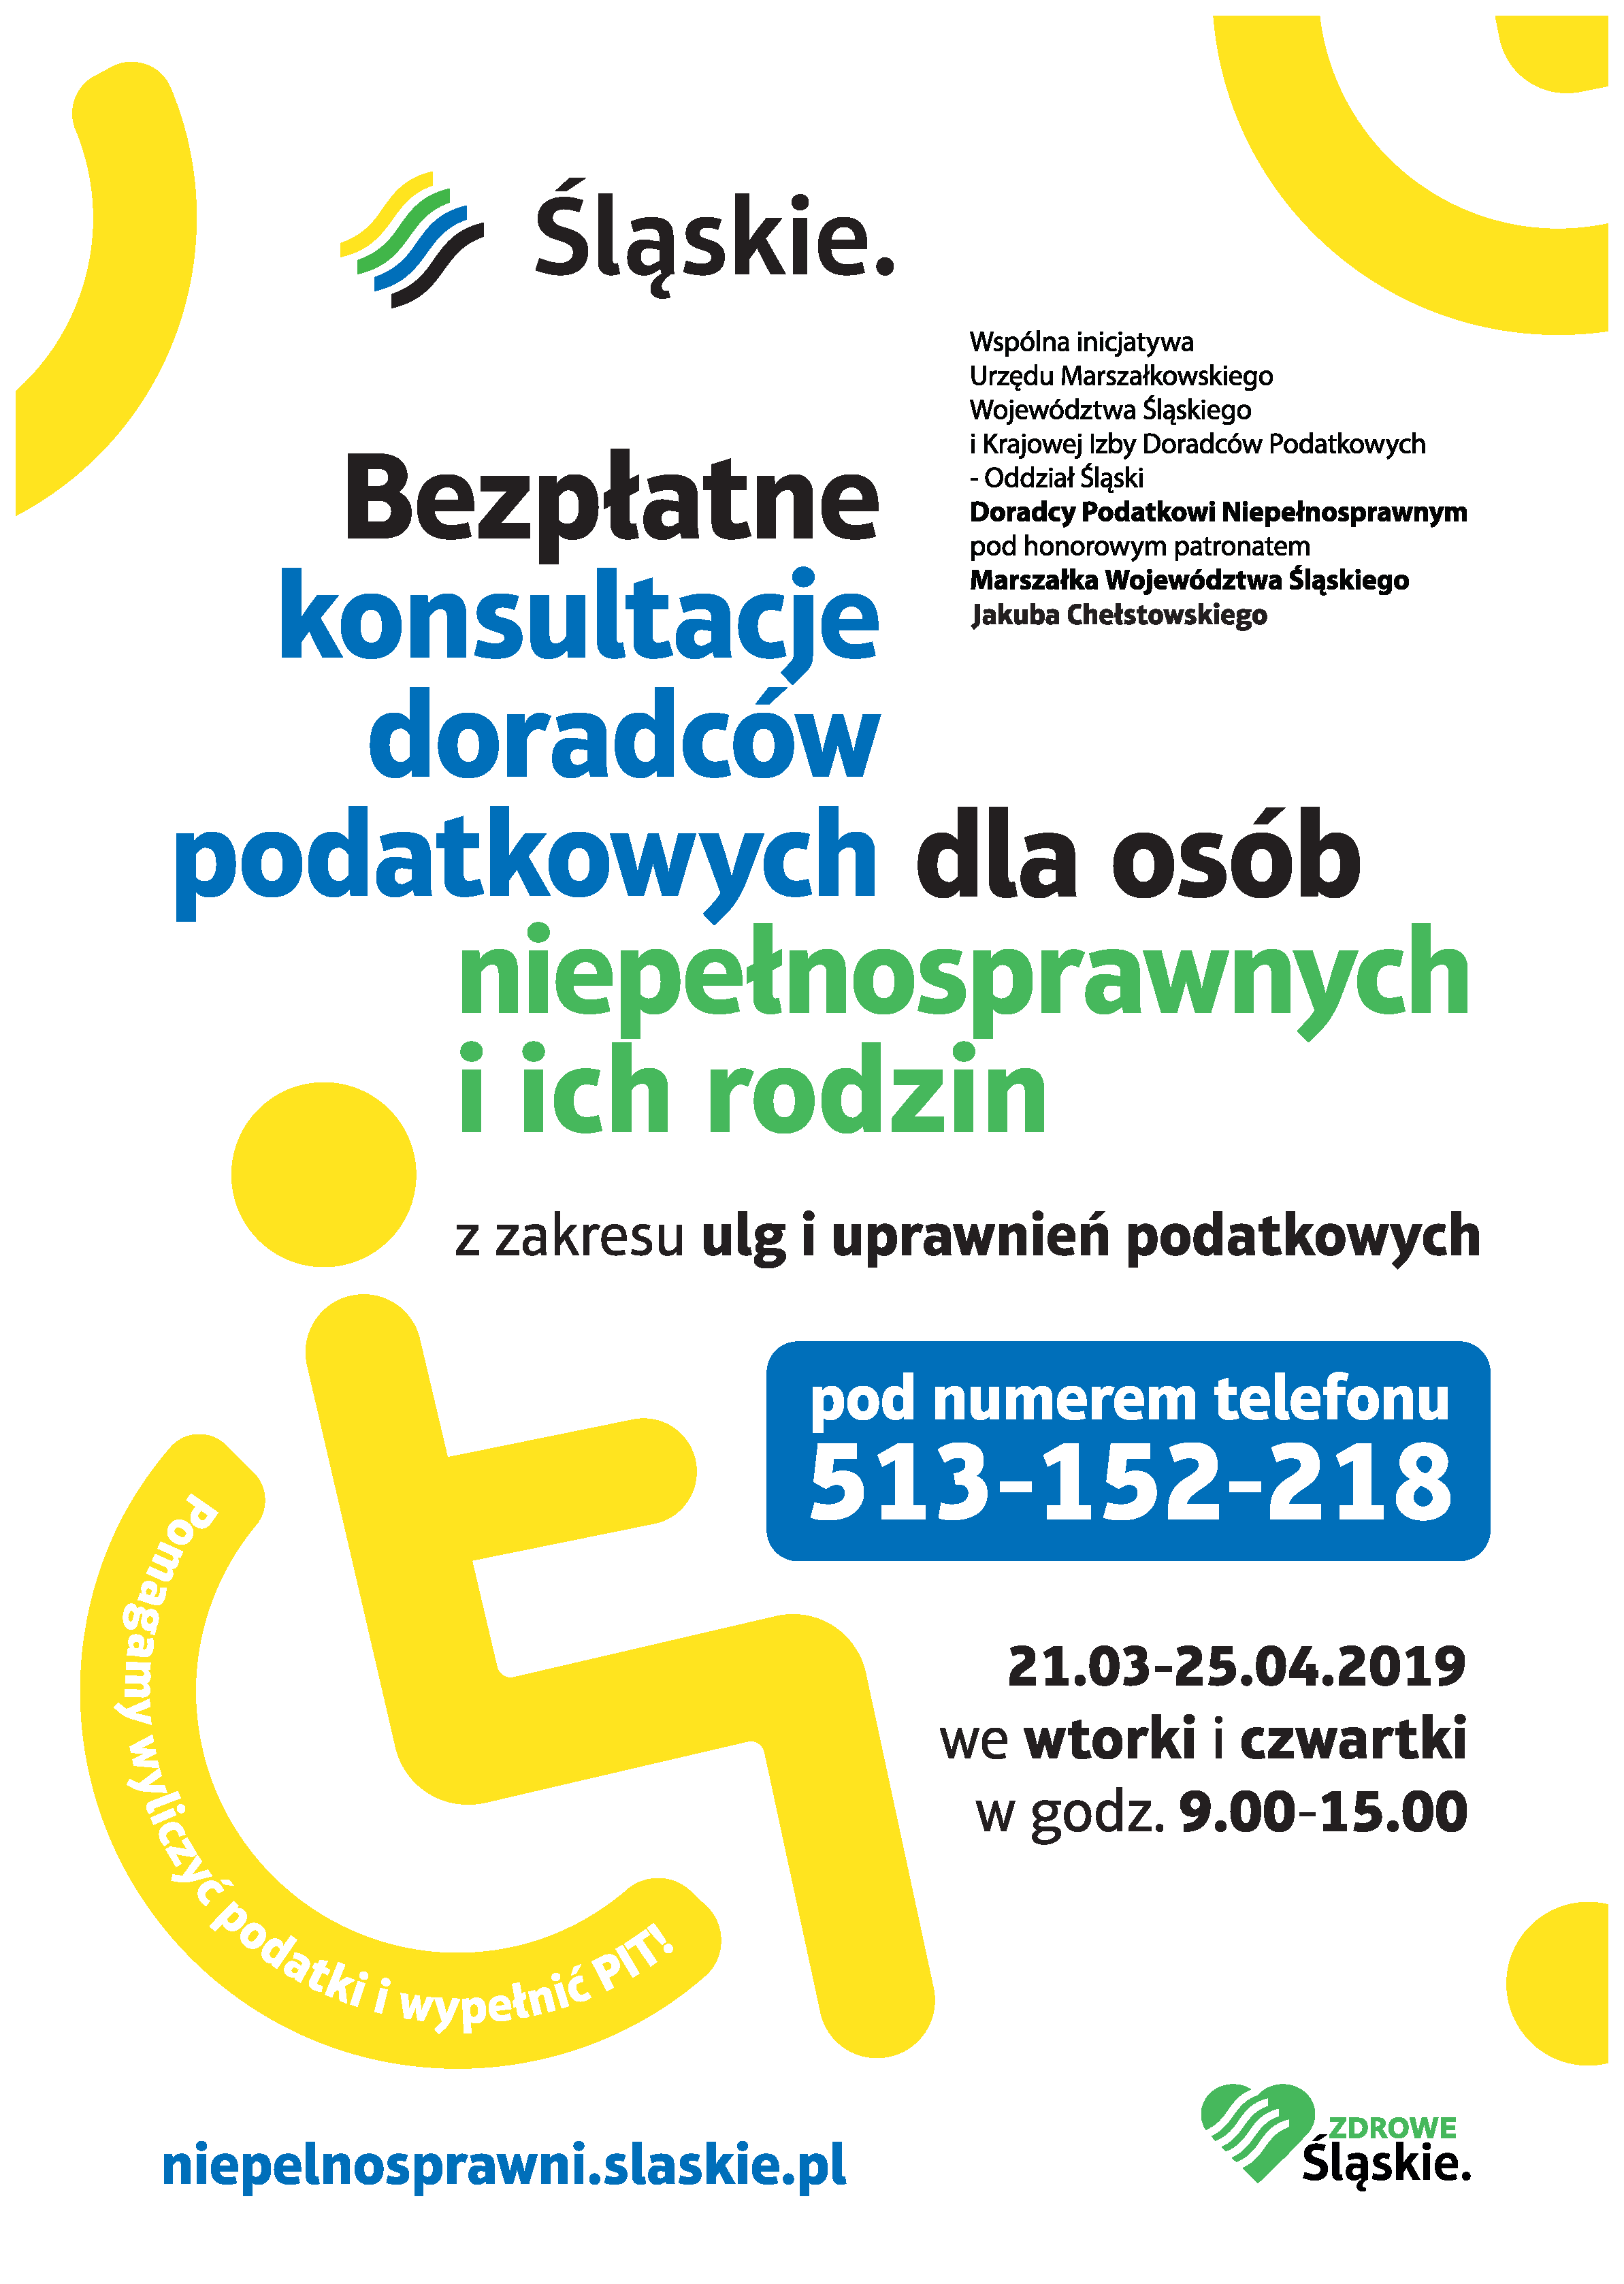 Plakat informujący o bezpłatnych konsultacjach doradców podatkowych dla osób niepełnosprawnych i ich rodzin.